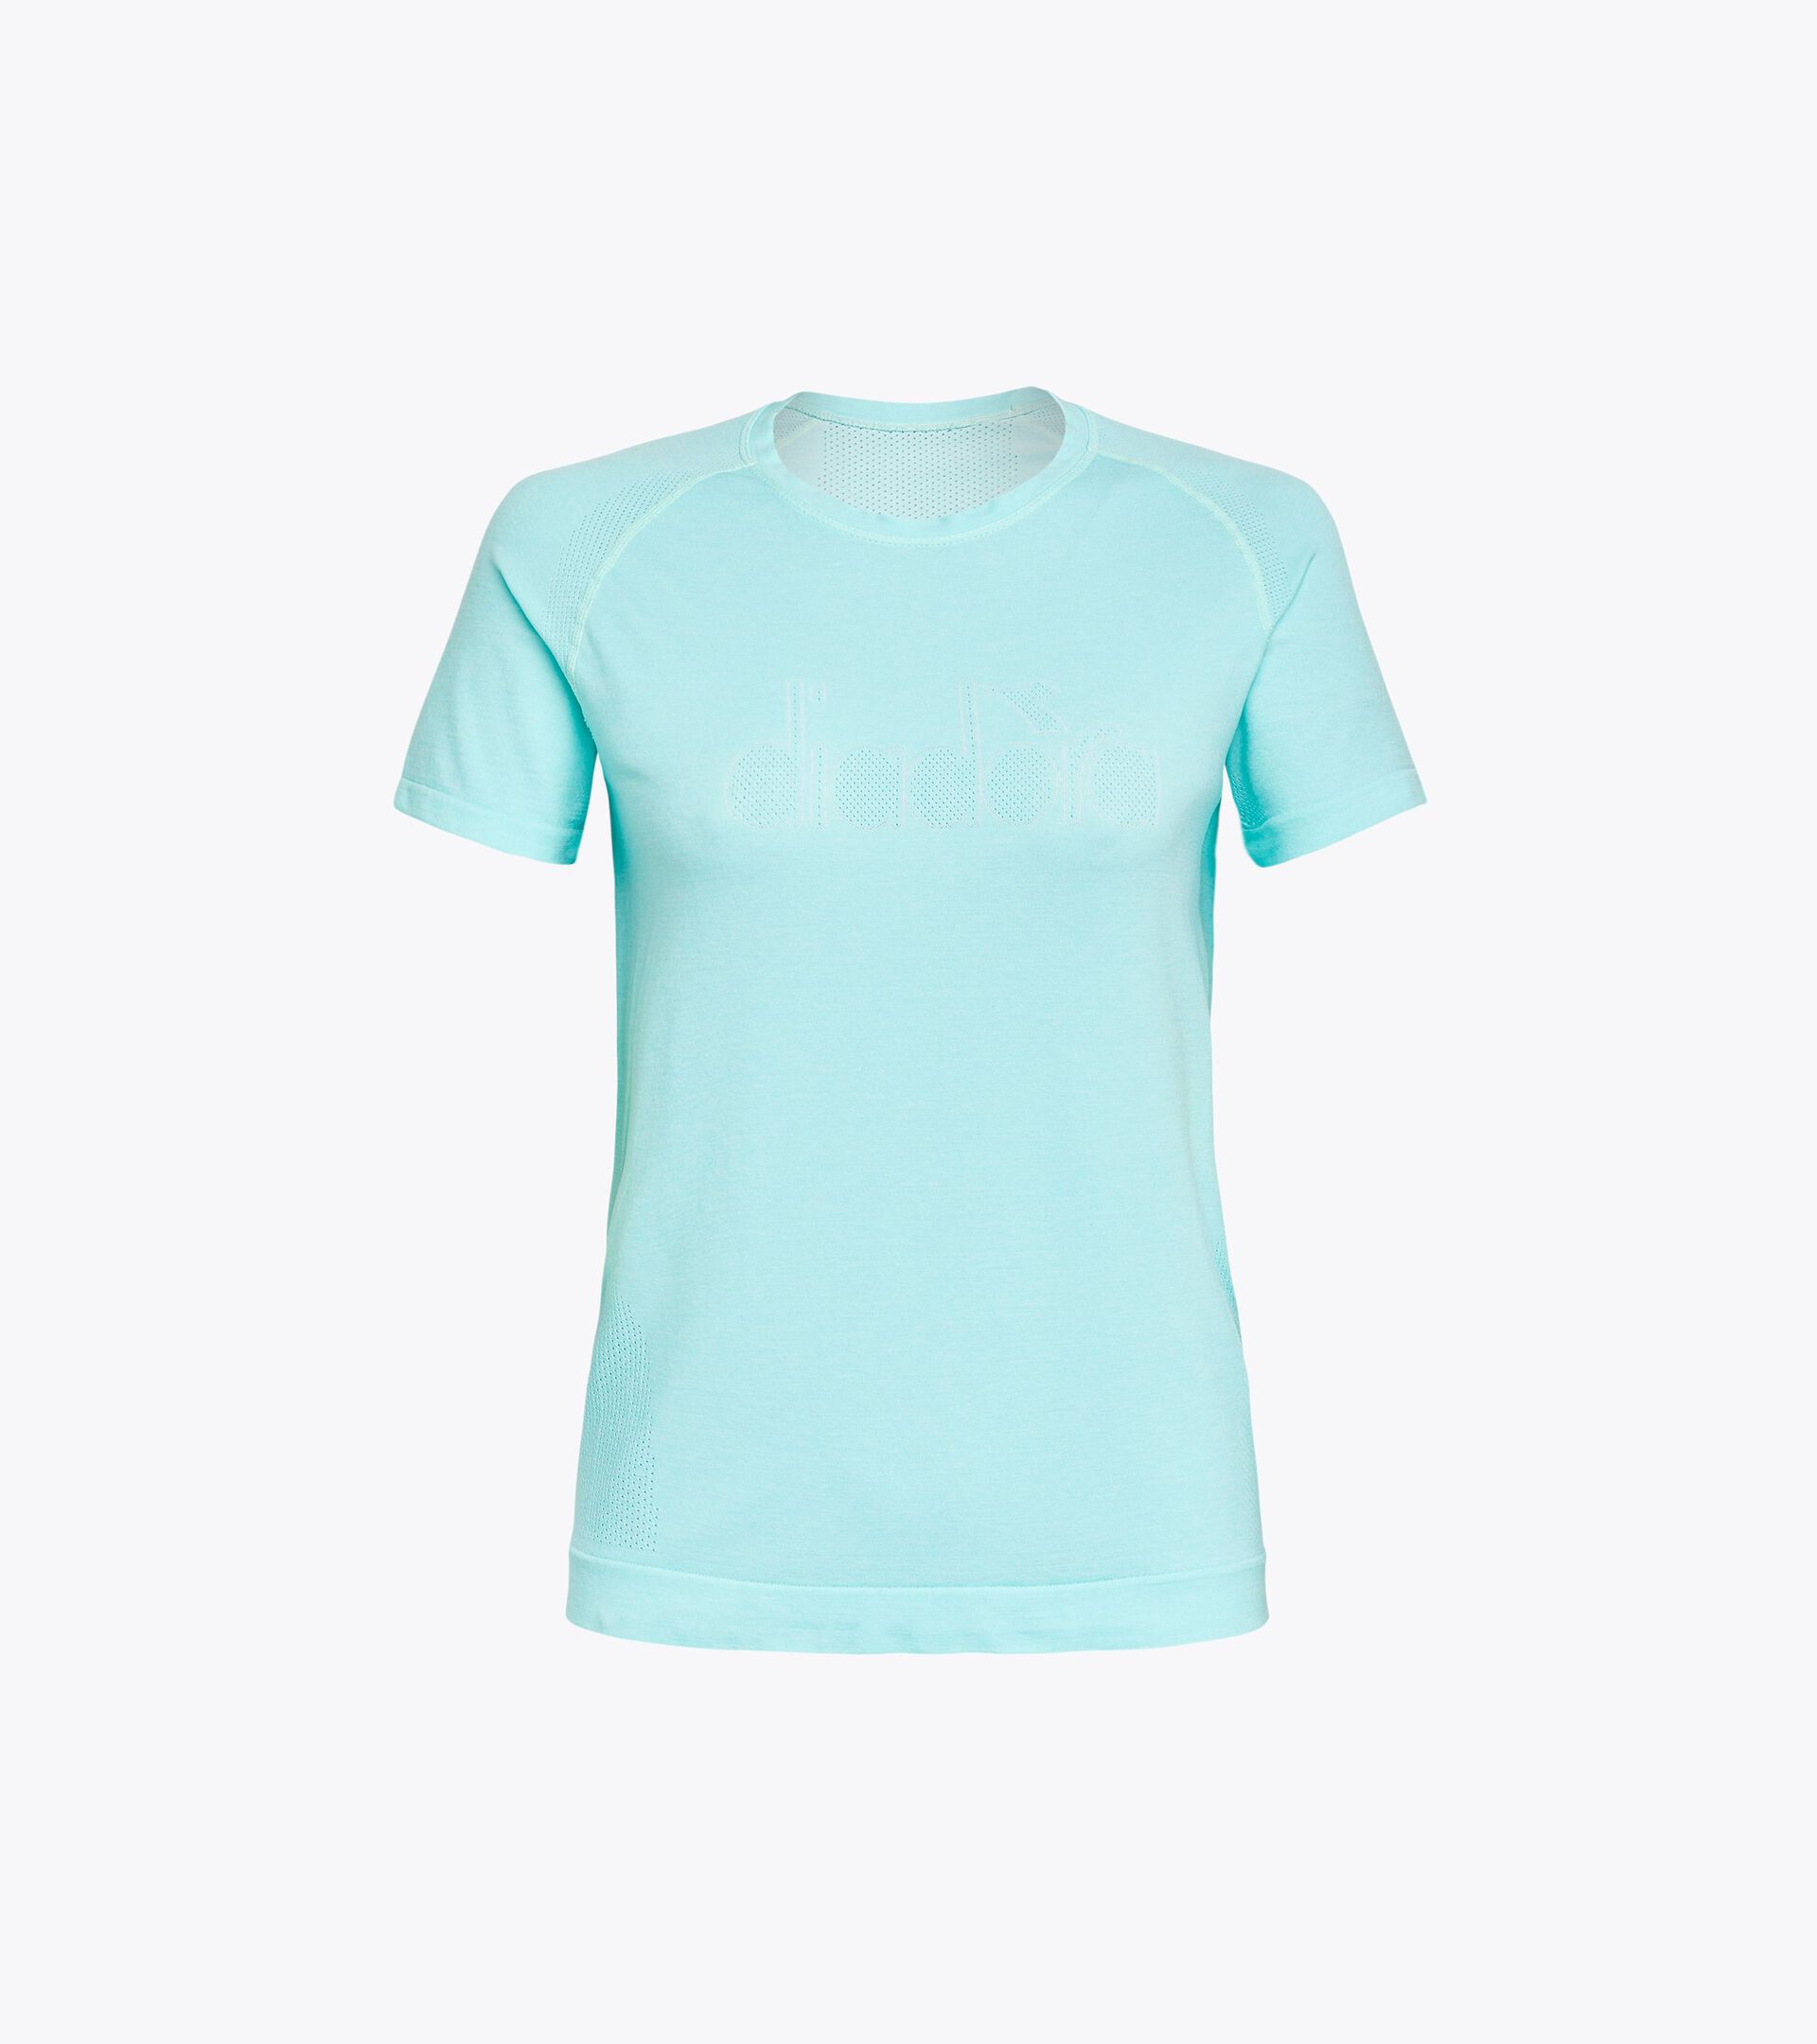 Running t-shirt - Made in Italy - Women L. SS T-SHIRT SKIN FRIENDLY ARUBA BLUE - Diadora